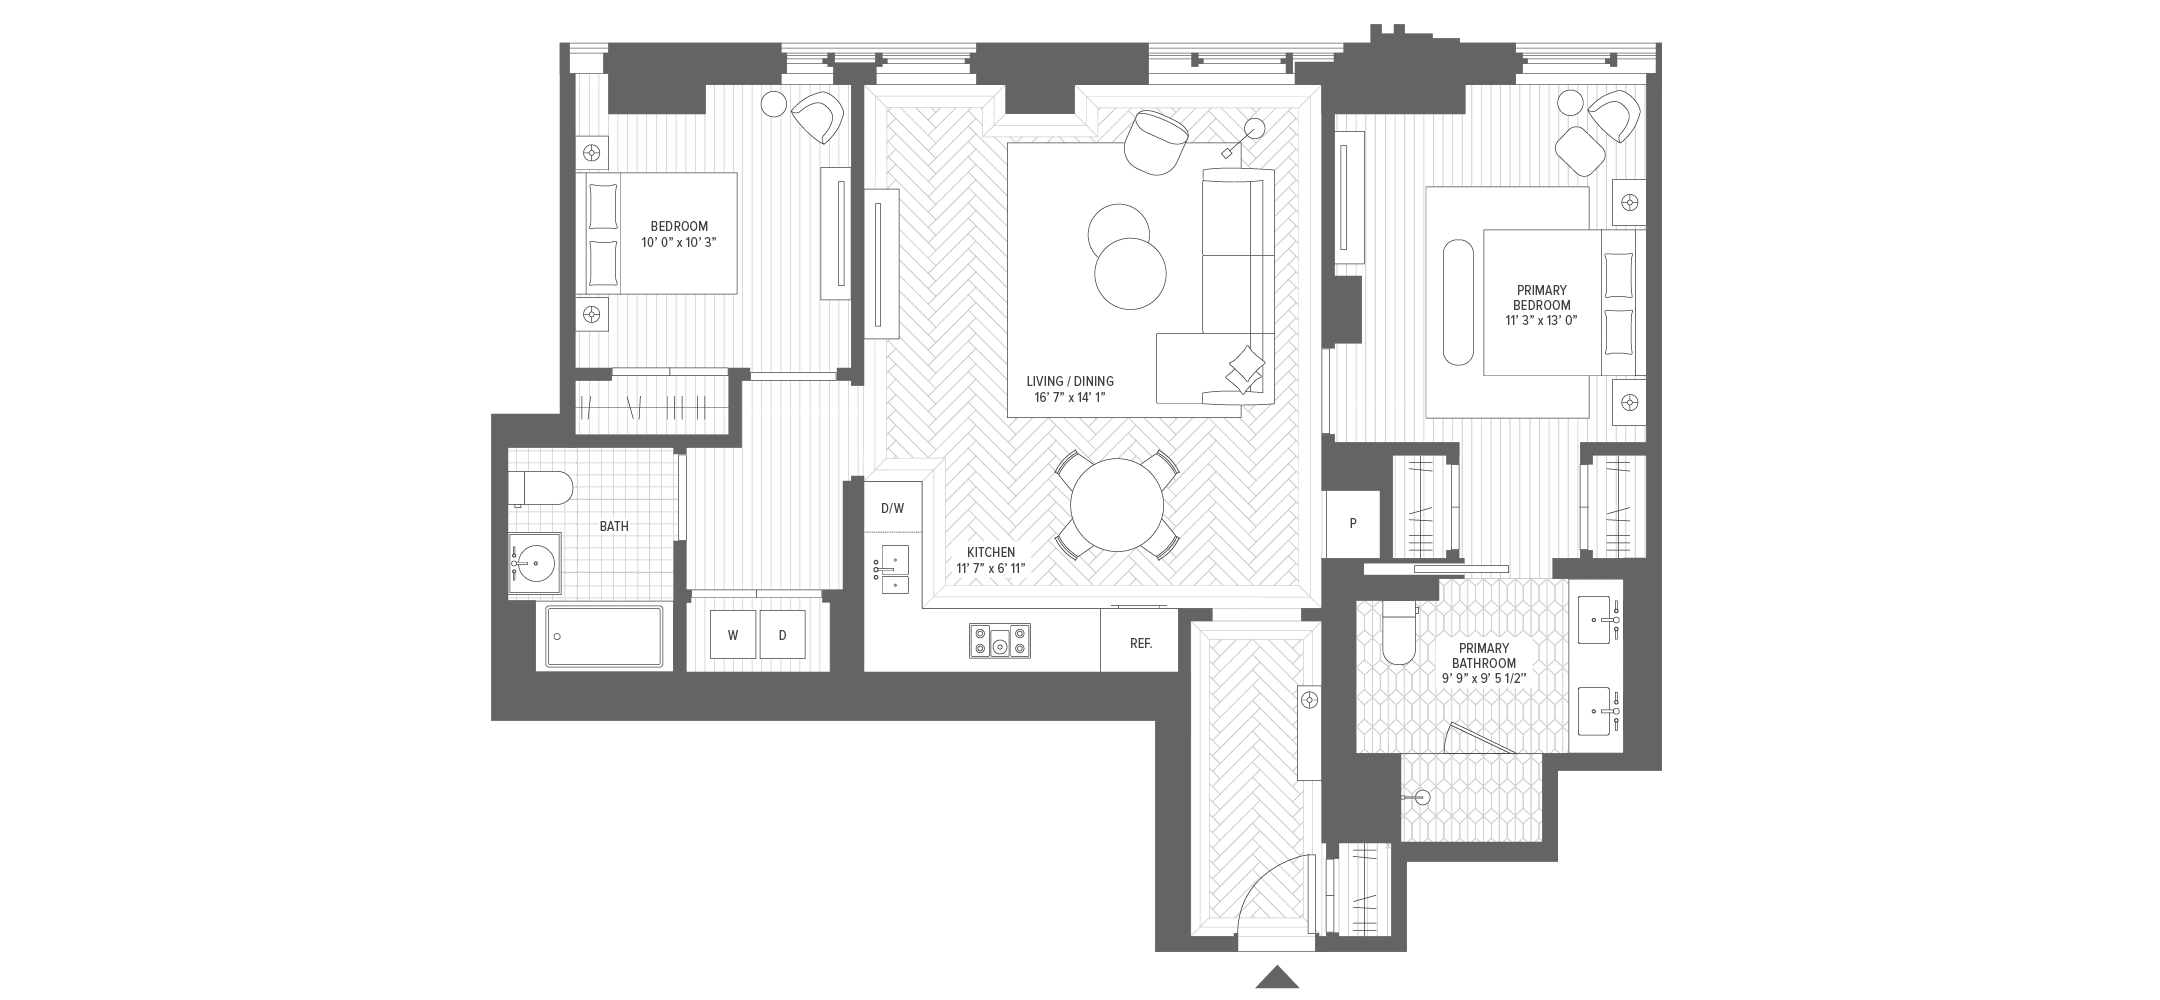 Unit 4A floorplan